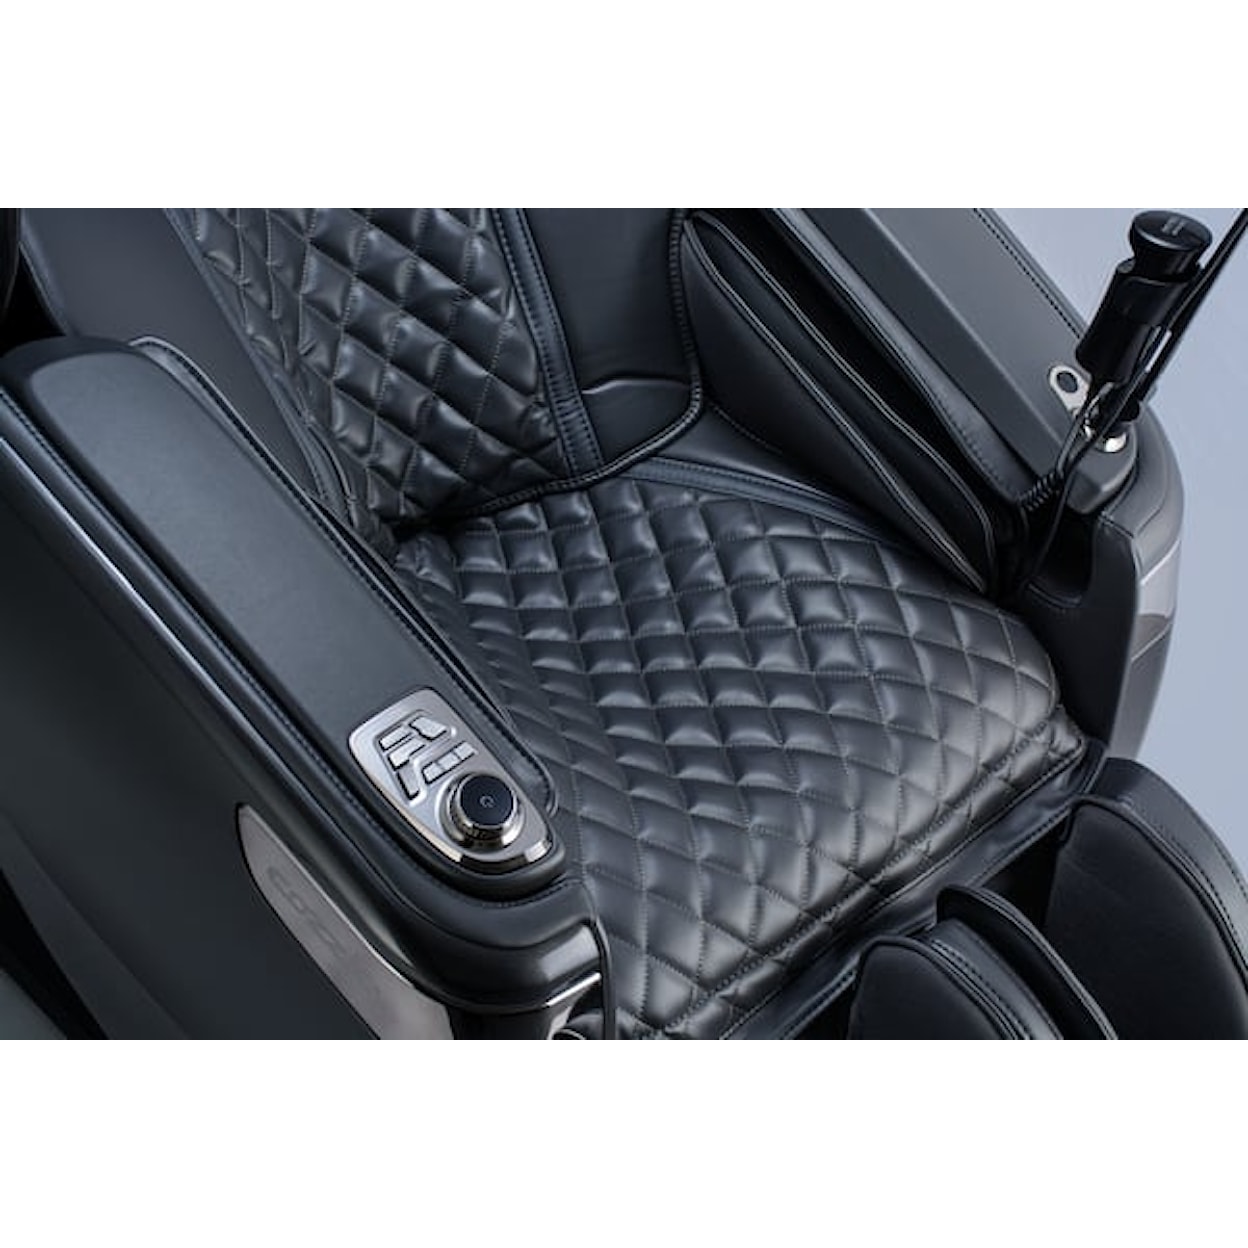 Cozzia CZ-716 Qi XE Pro Massage Chair